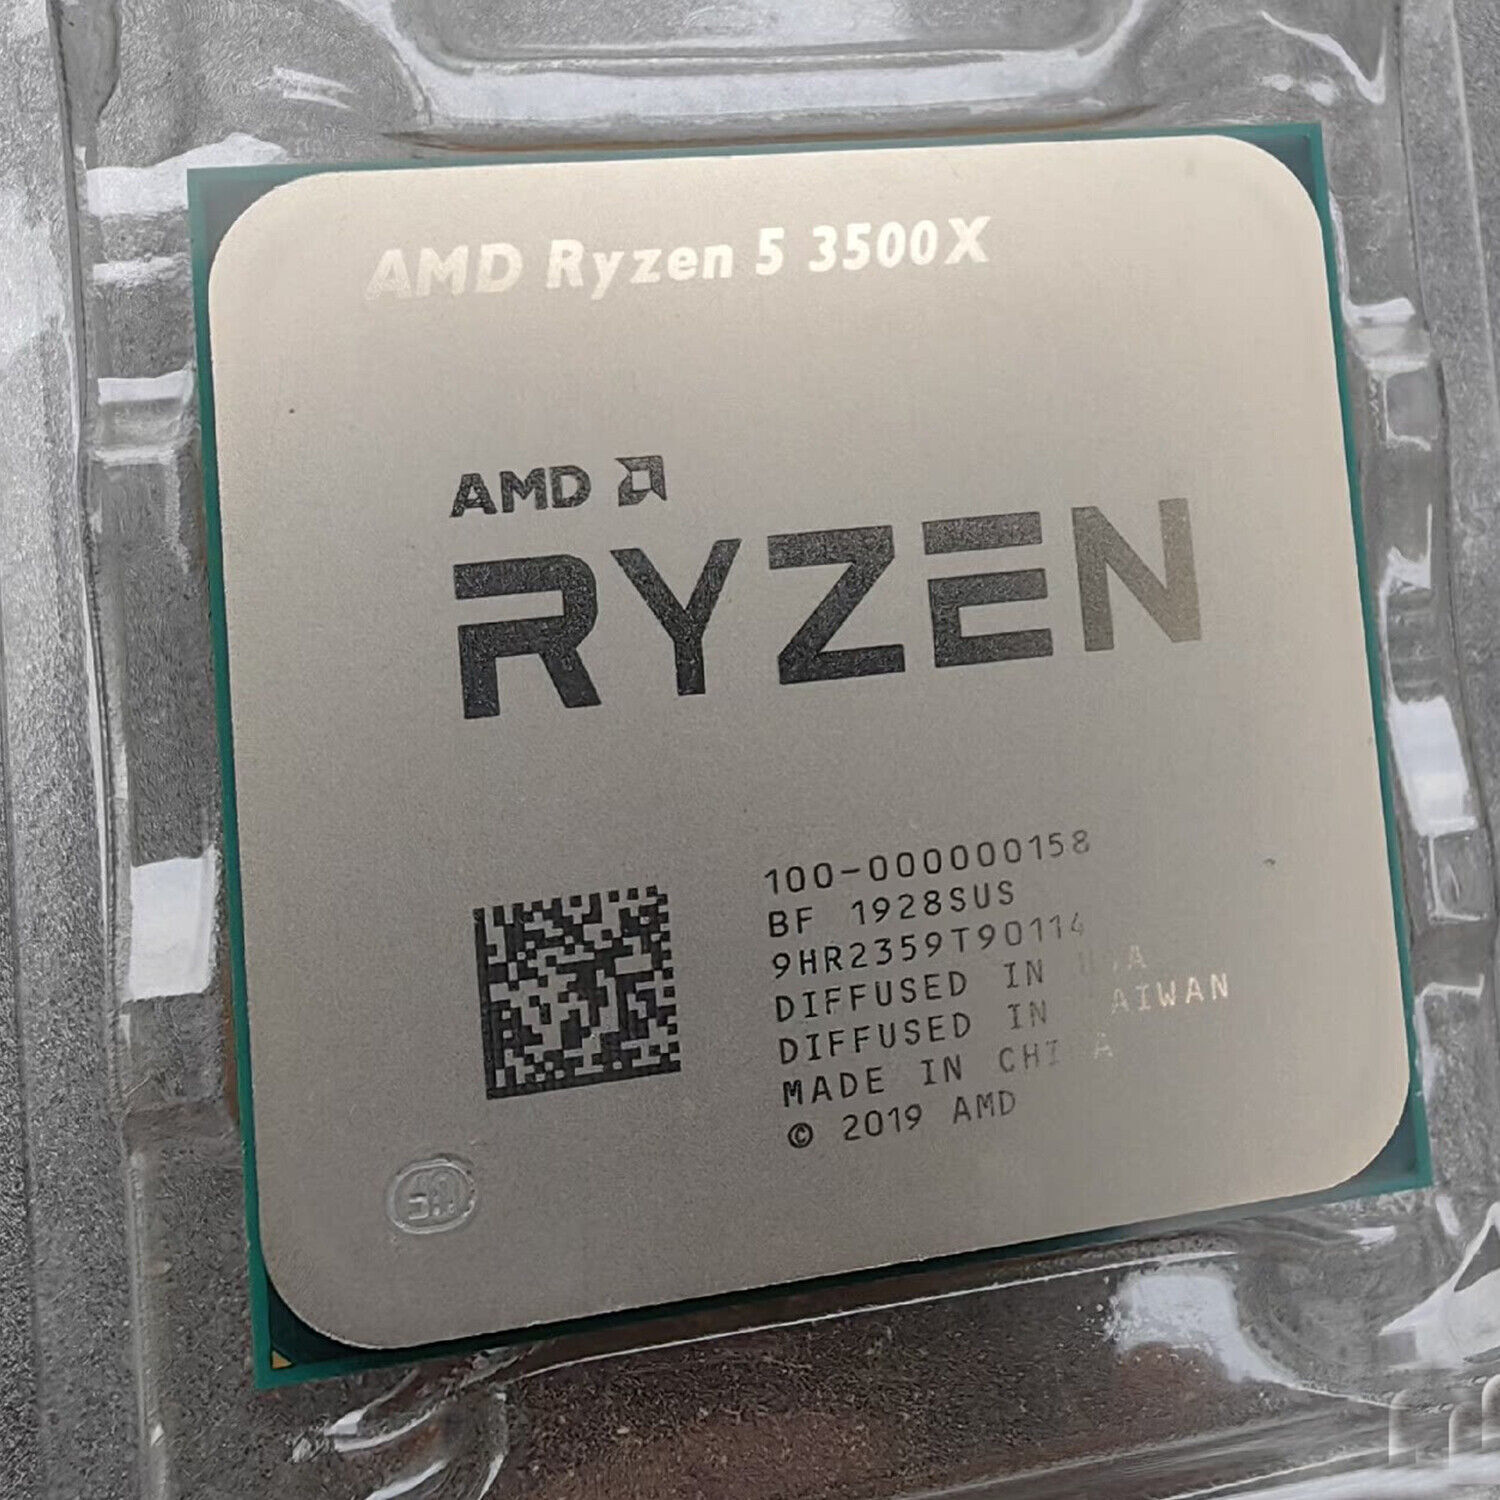 AMD RYZEN 9 3900X RYZEN R7 3700X 3800X RYZEN R5 3600X 3500X Socket AM4 Processor